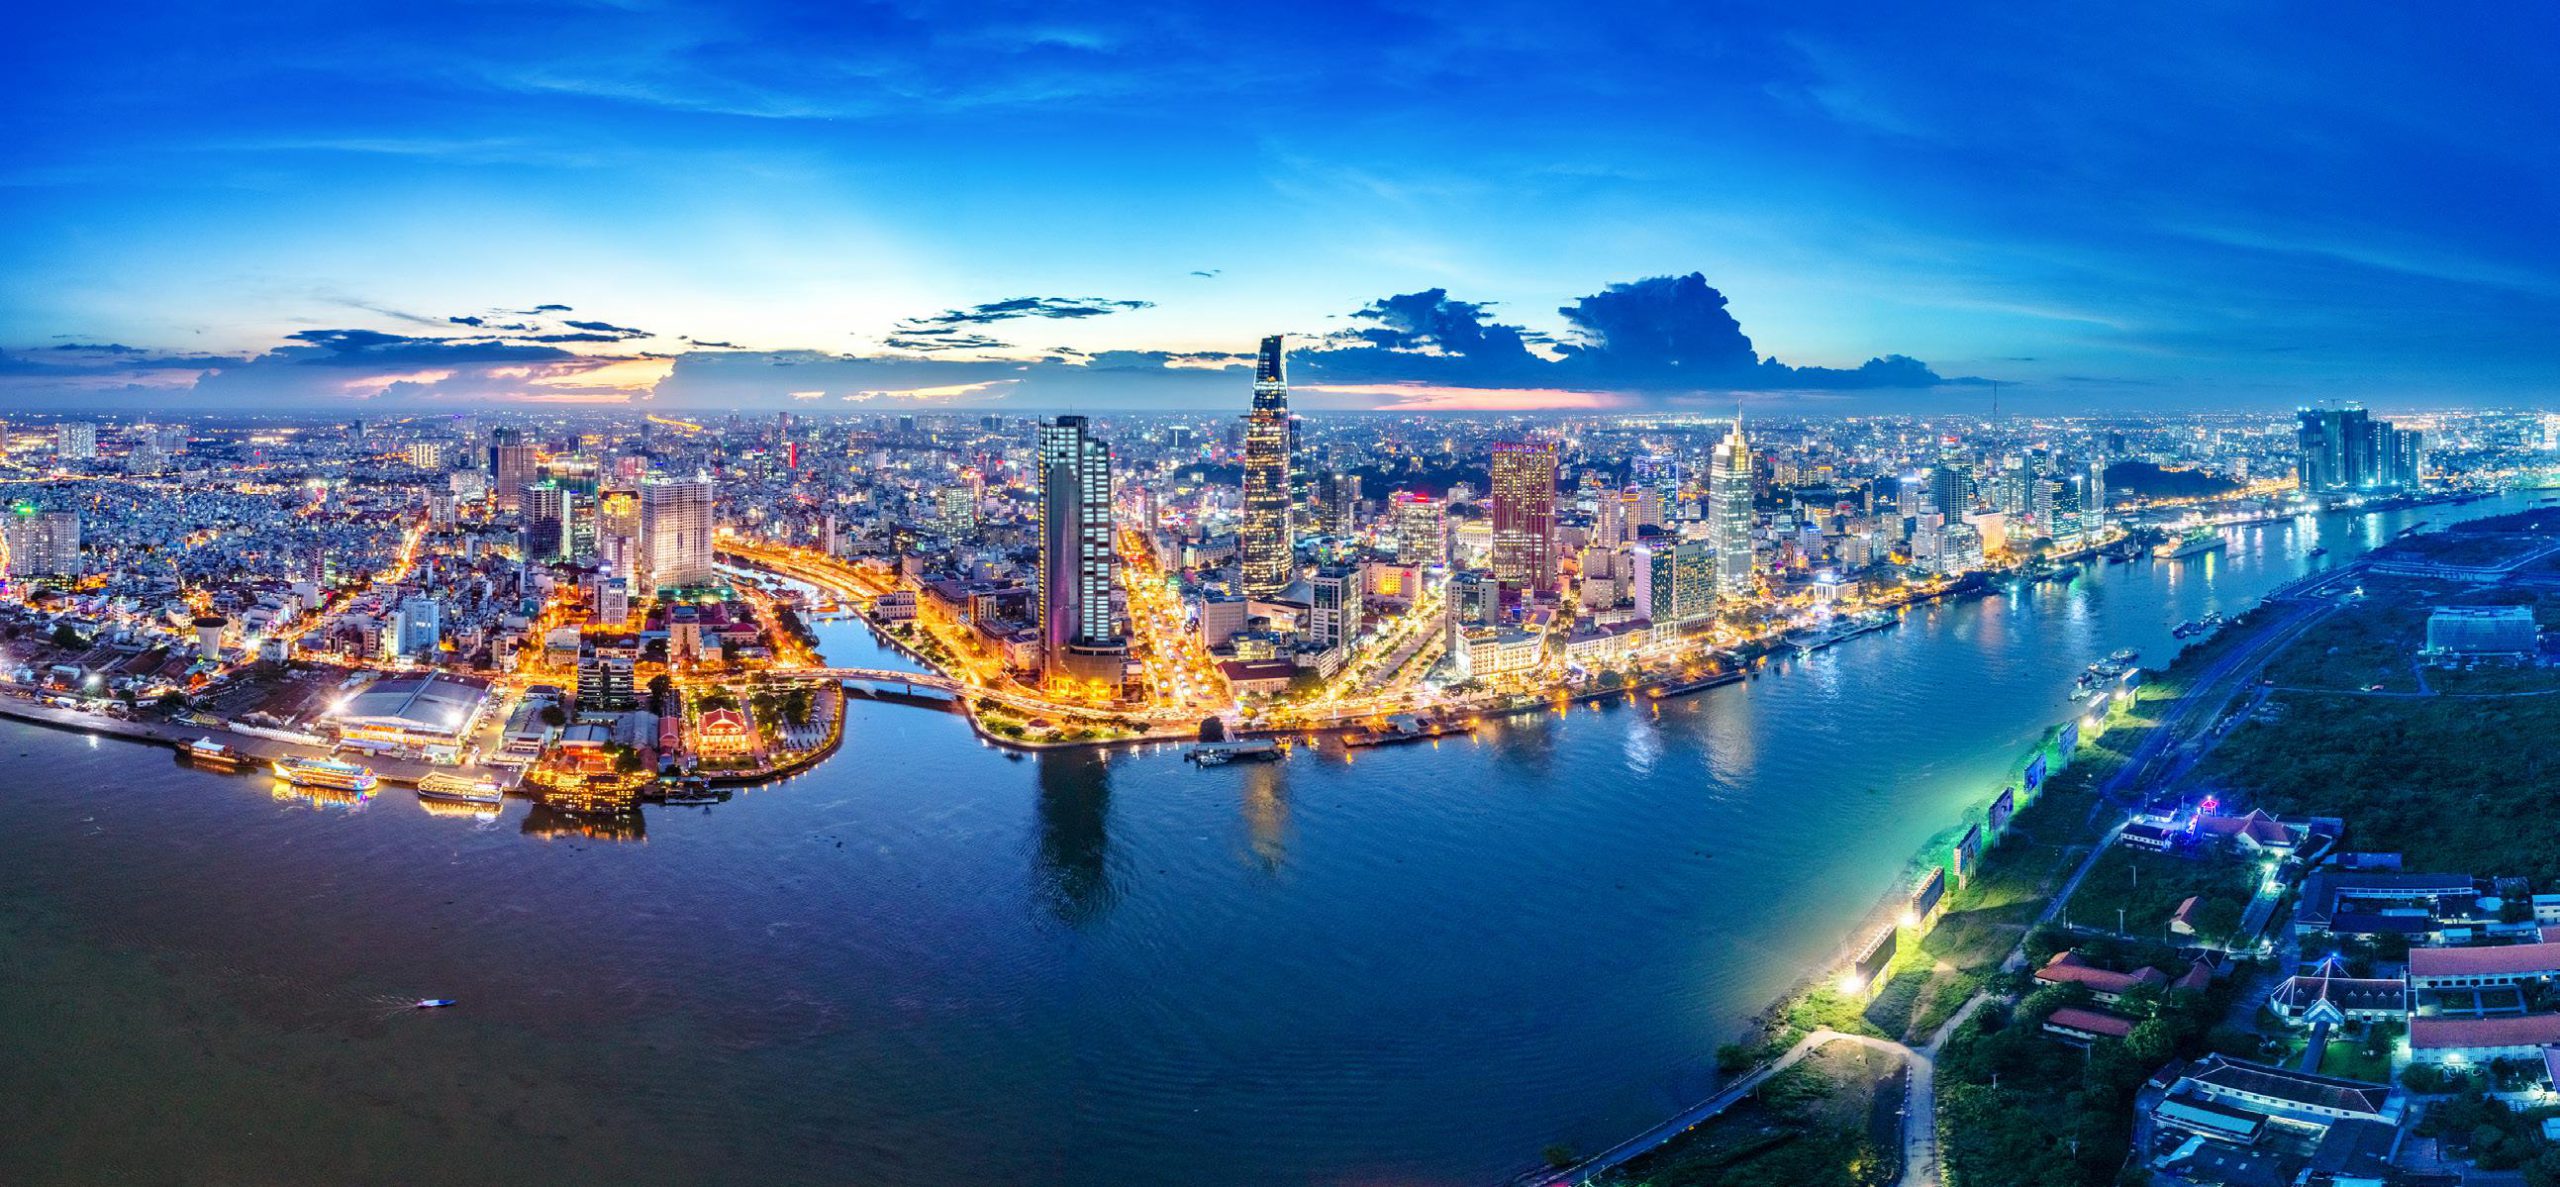 thứ tự các thành phố lớn nhất Việt Nam